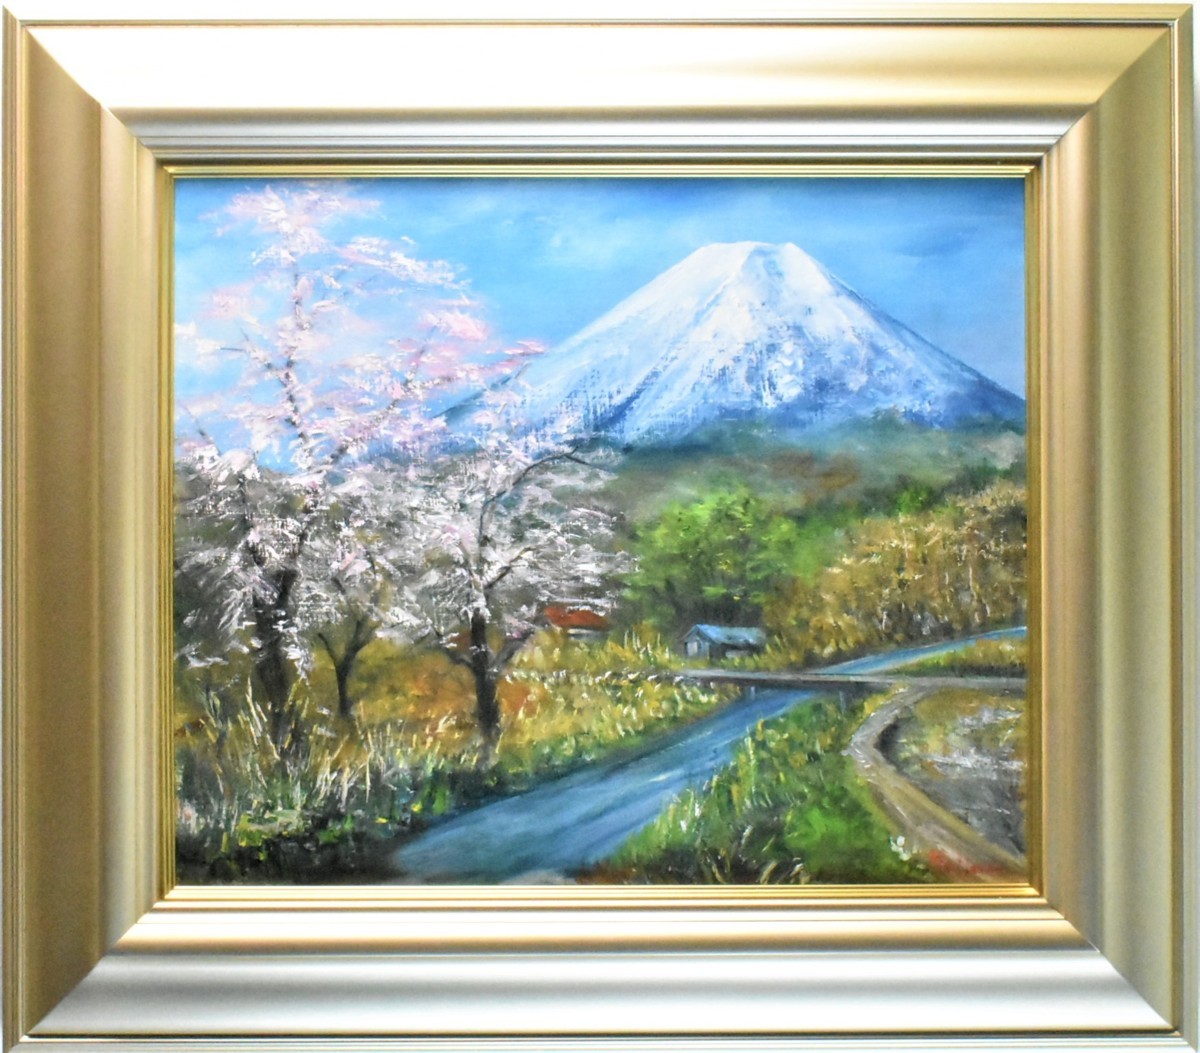 لوحة زيتية لهاجيمي واتانابي رقم 8 لهارو أوشينو [5000 قطعة معروضة للبيع في معرض ماساميتسو! يمكنك العثور على عملك المفضل], تلوين, طلاء زيتي, طبيعة, رسم مناظر طبيعية